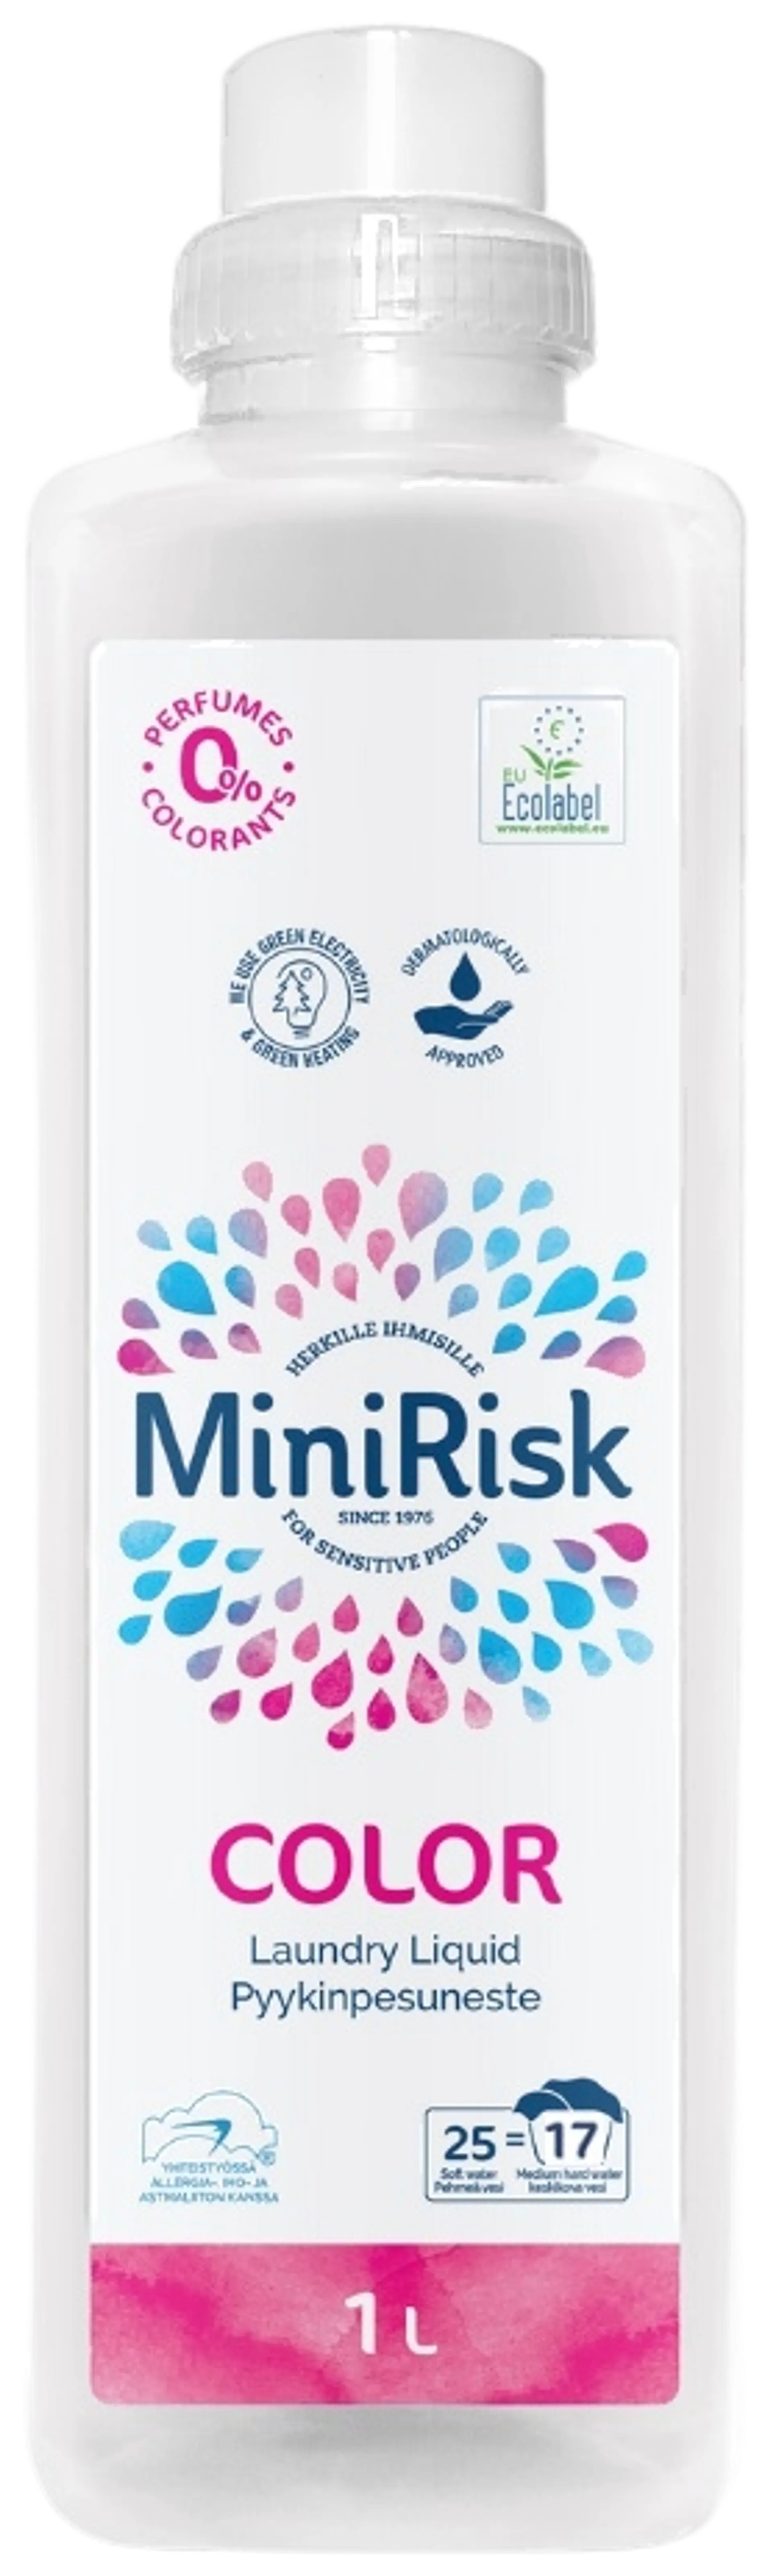 Mini Risk Color Pyykinpesuneste 1,0L